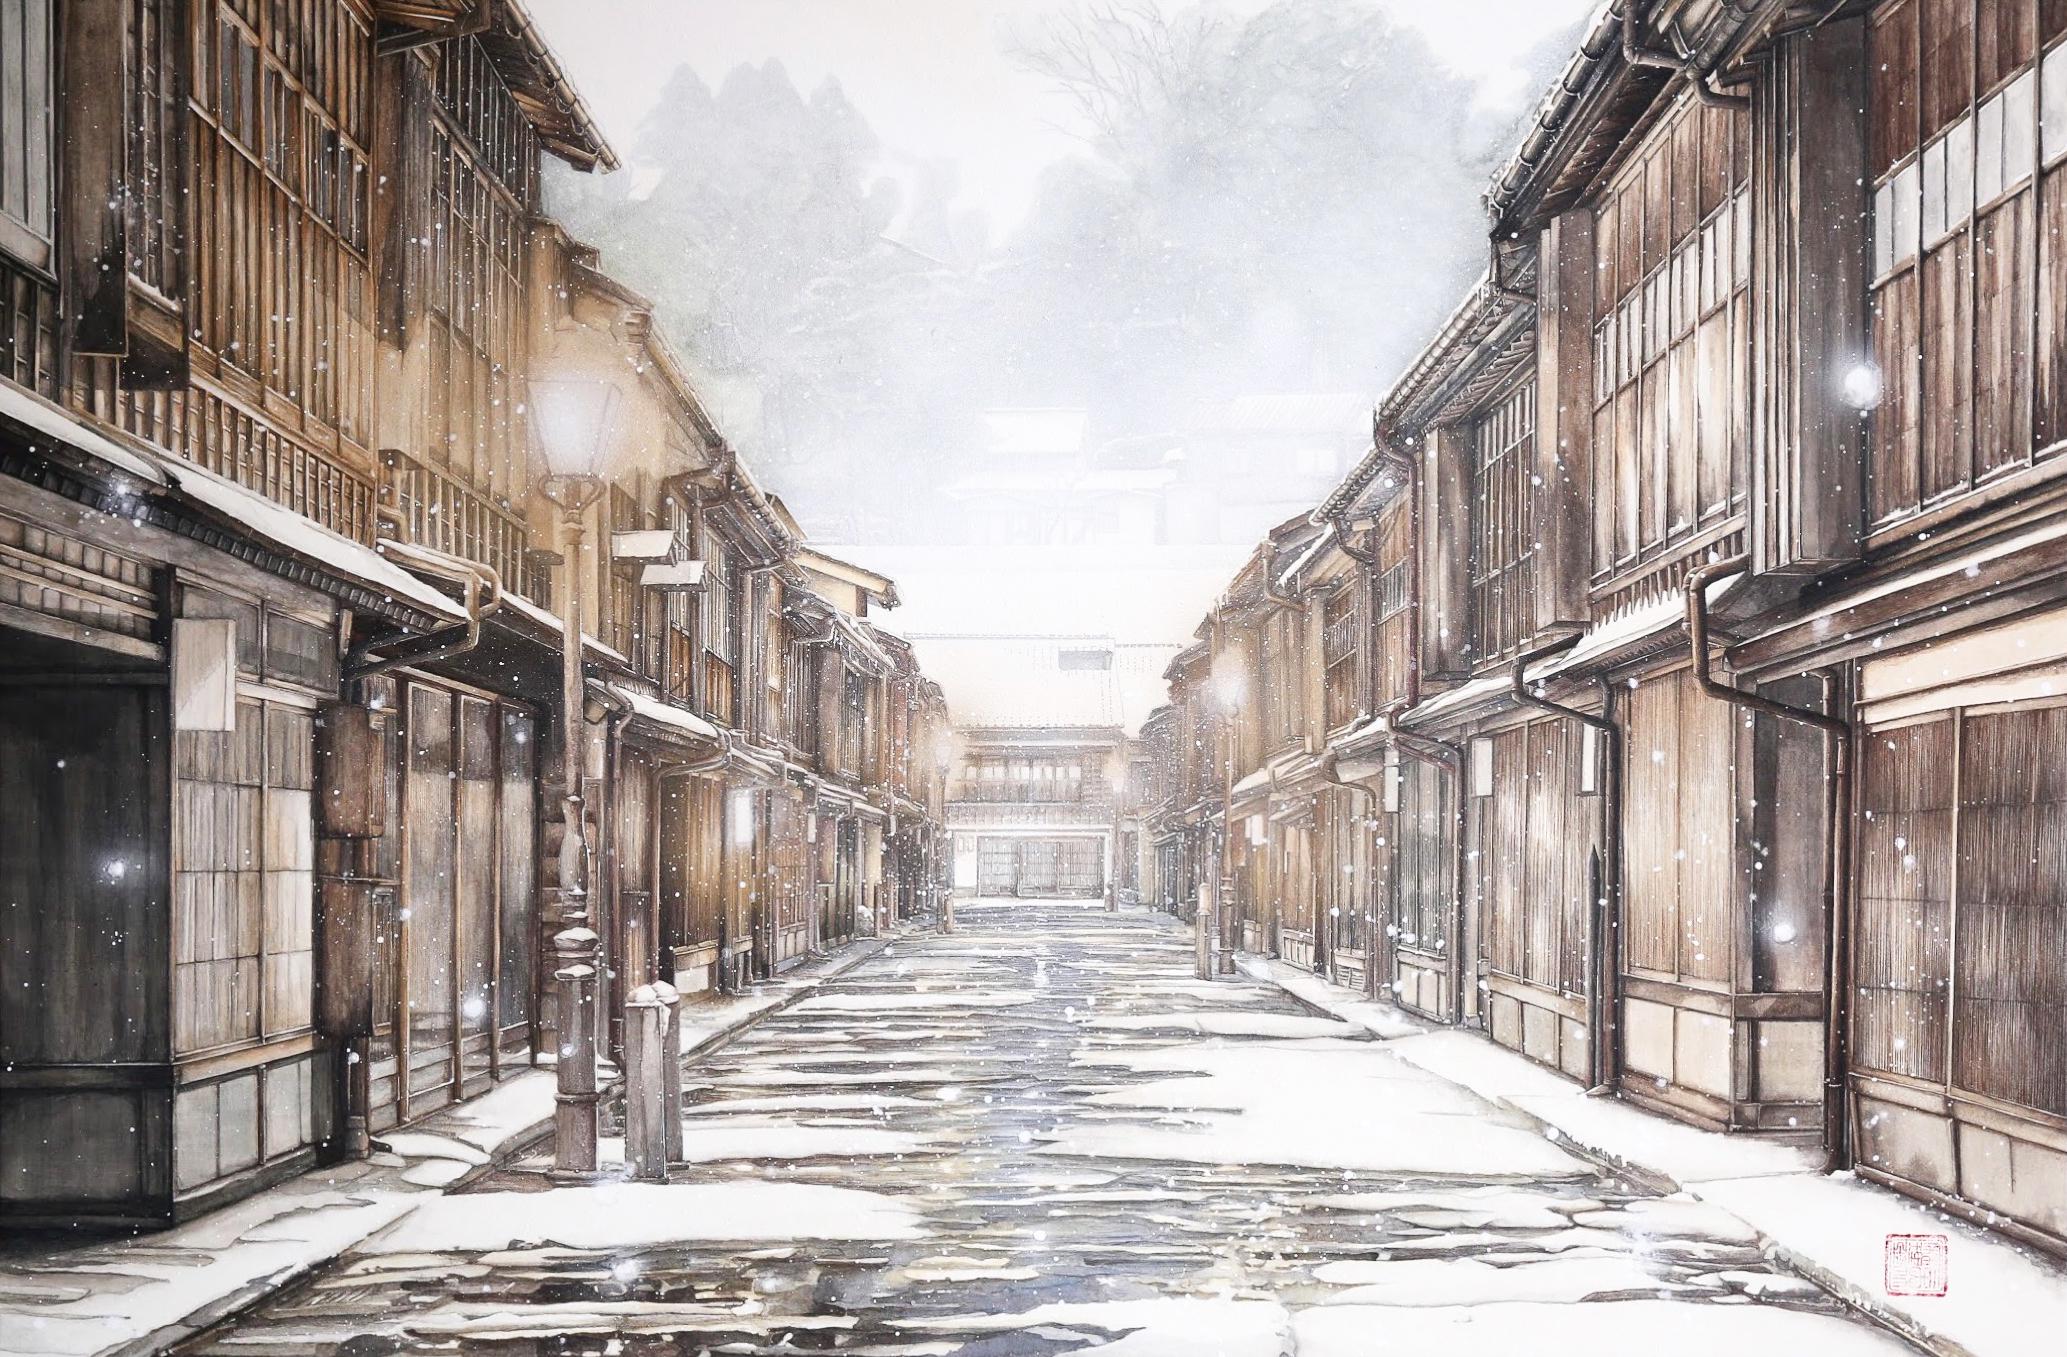 Kanazawa - Peinture japonaise de paysage urbain en or 24 carats et minéraux, réalisme, hiver